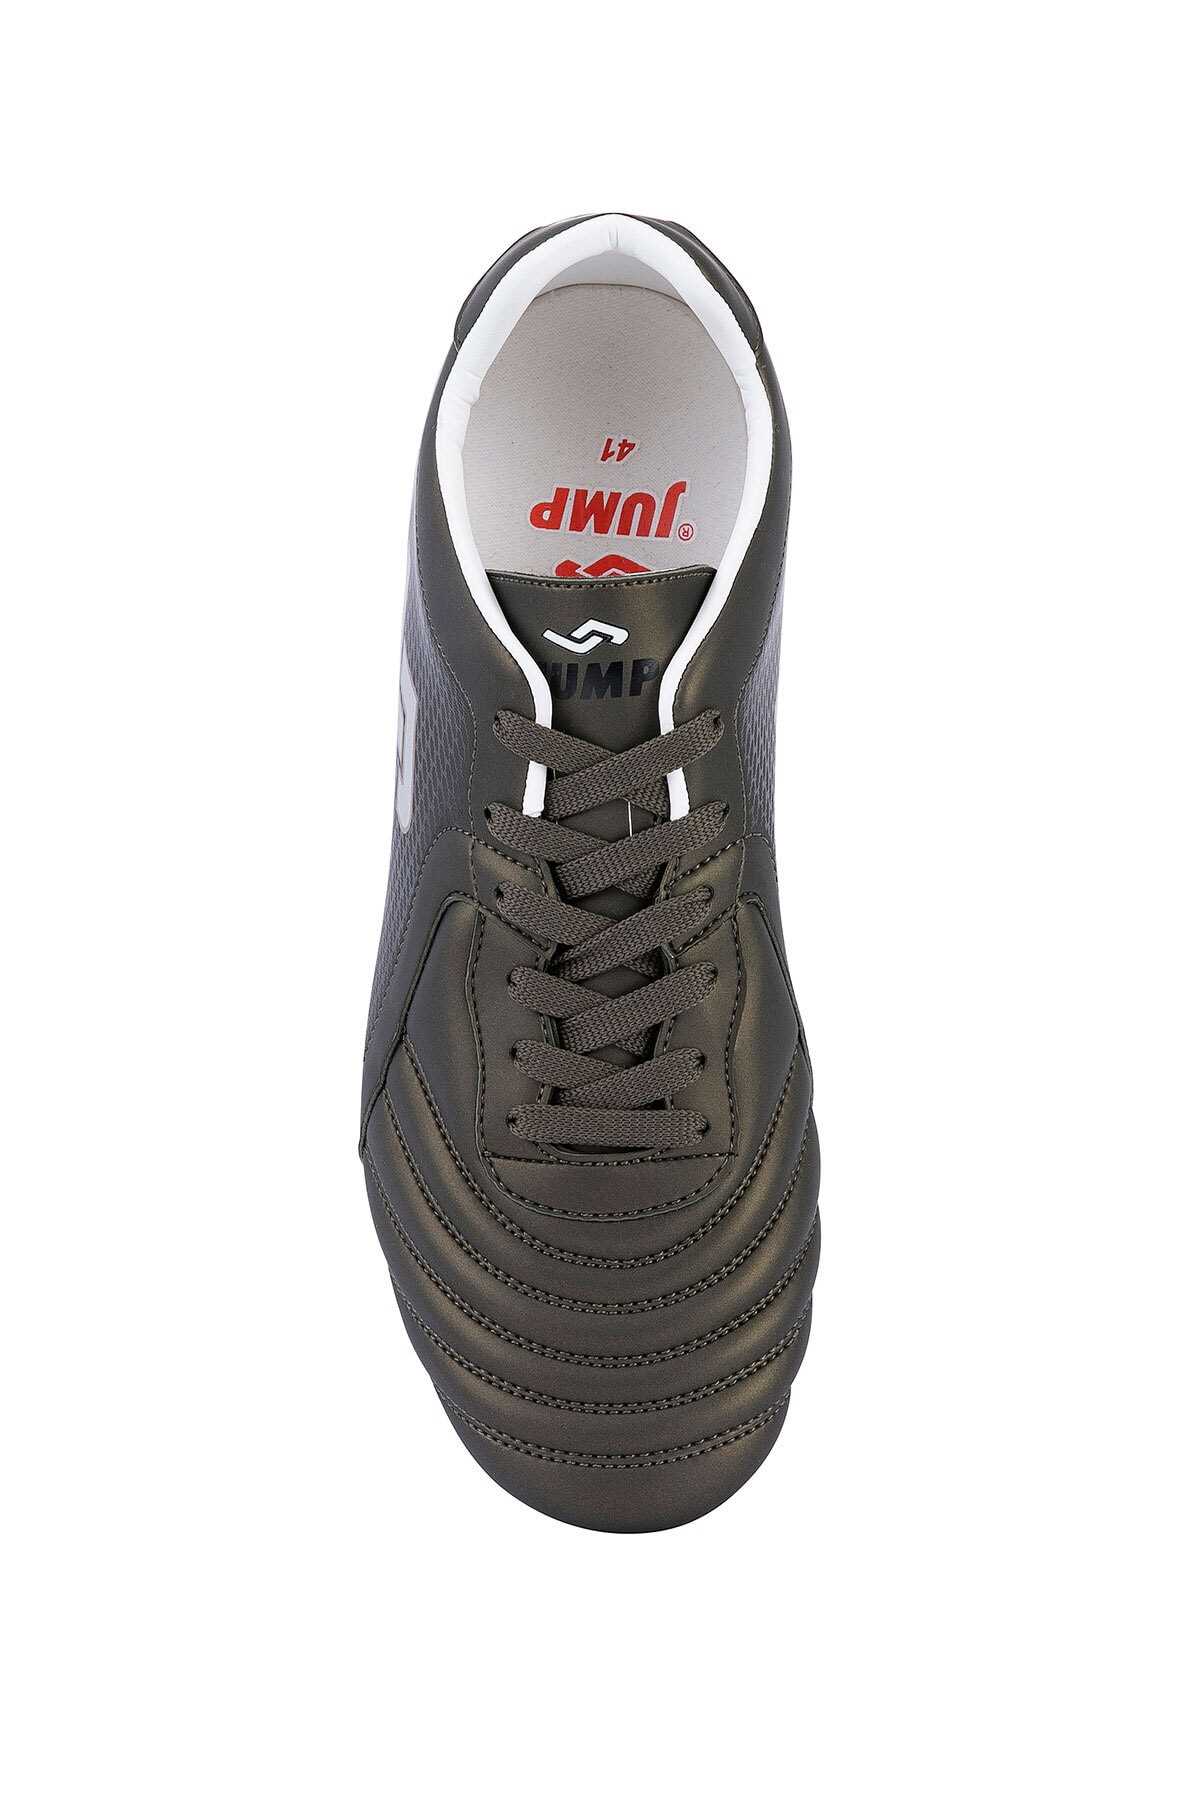 خرید مستقیم کفش فوتبال مردانه شیک Jump رنگ خاکی کد ty34153278